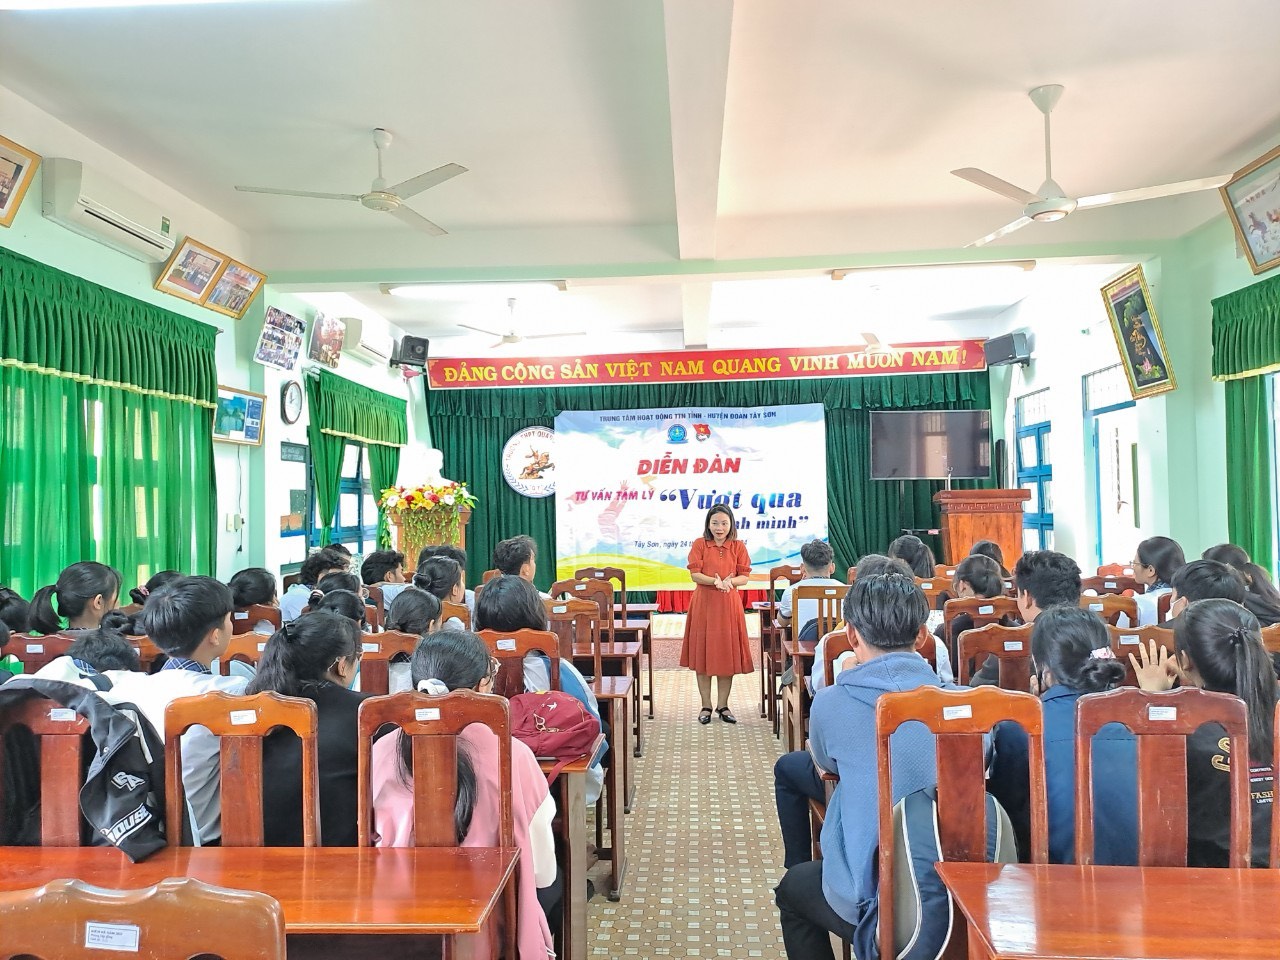 Tổ chức diễn đàn tư vấn tâm lý “Vượt qua chính mình” cho học sinh trường THPT Quang Trung và THPT Nguyễn Huệ, huyện Tây Sơn.